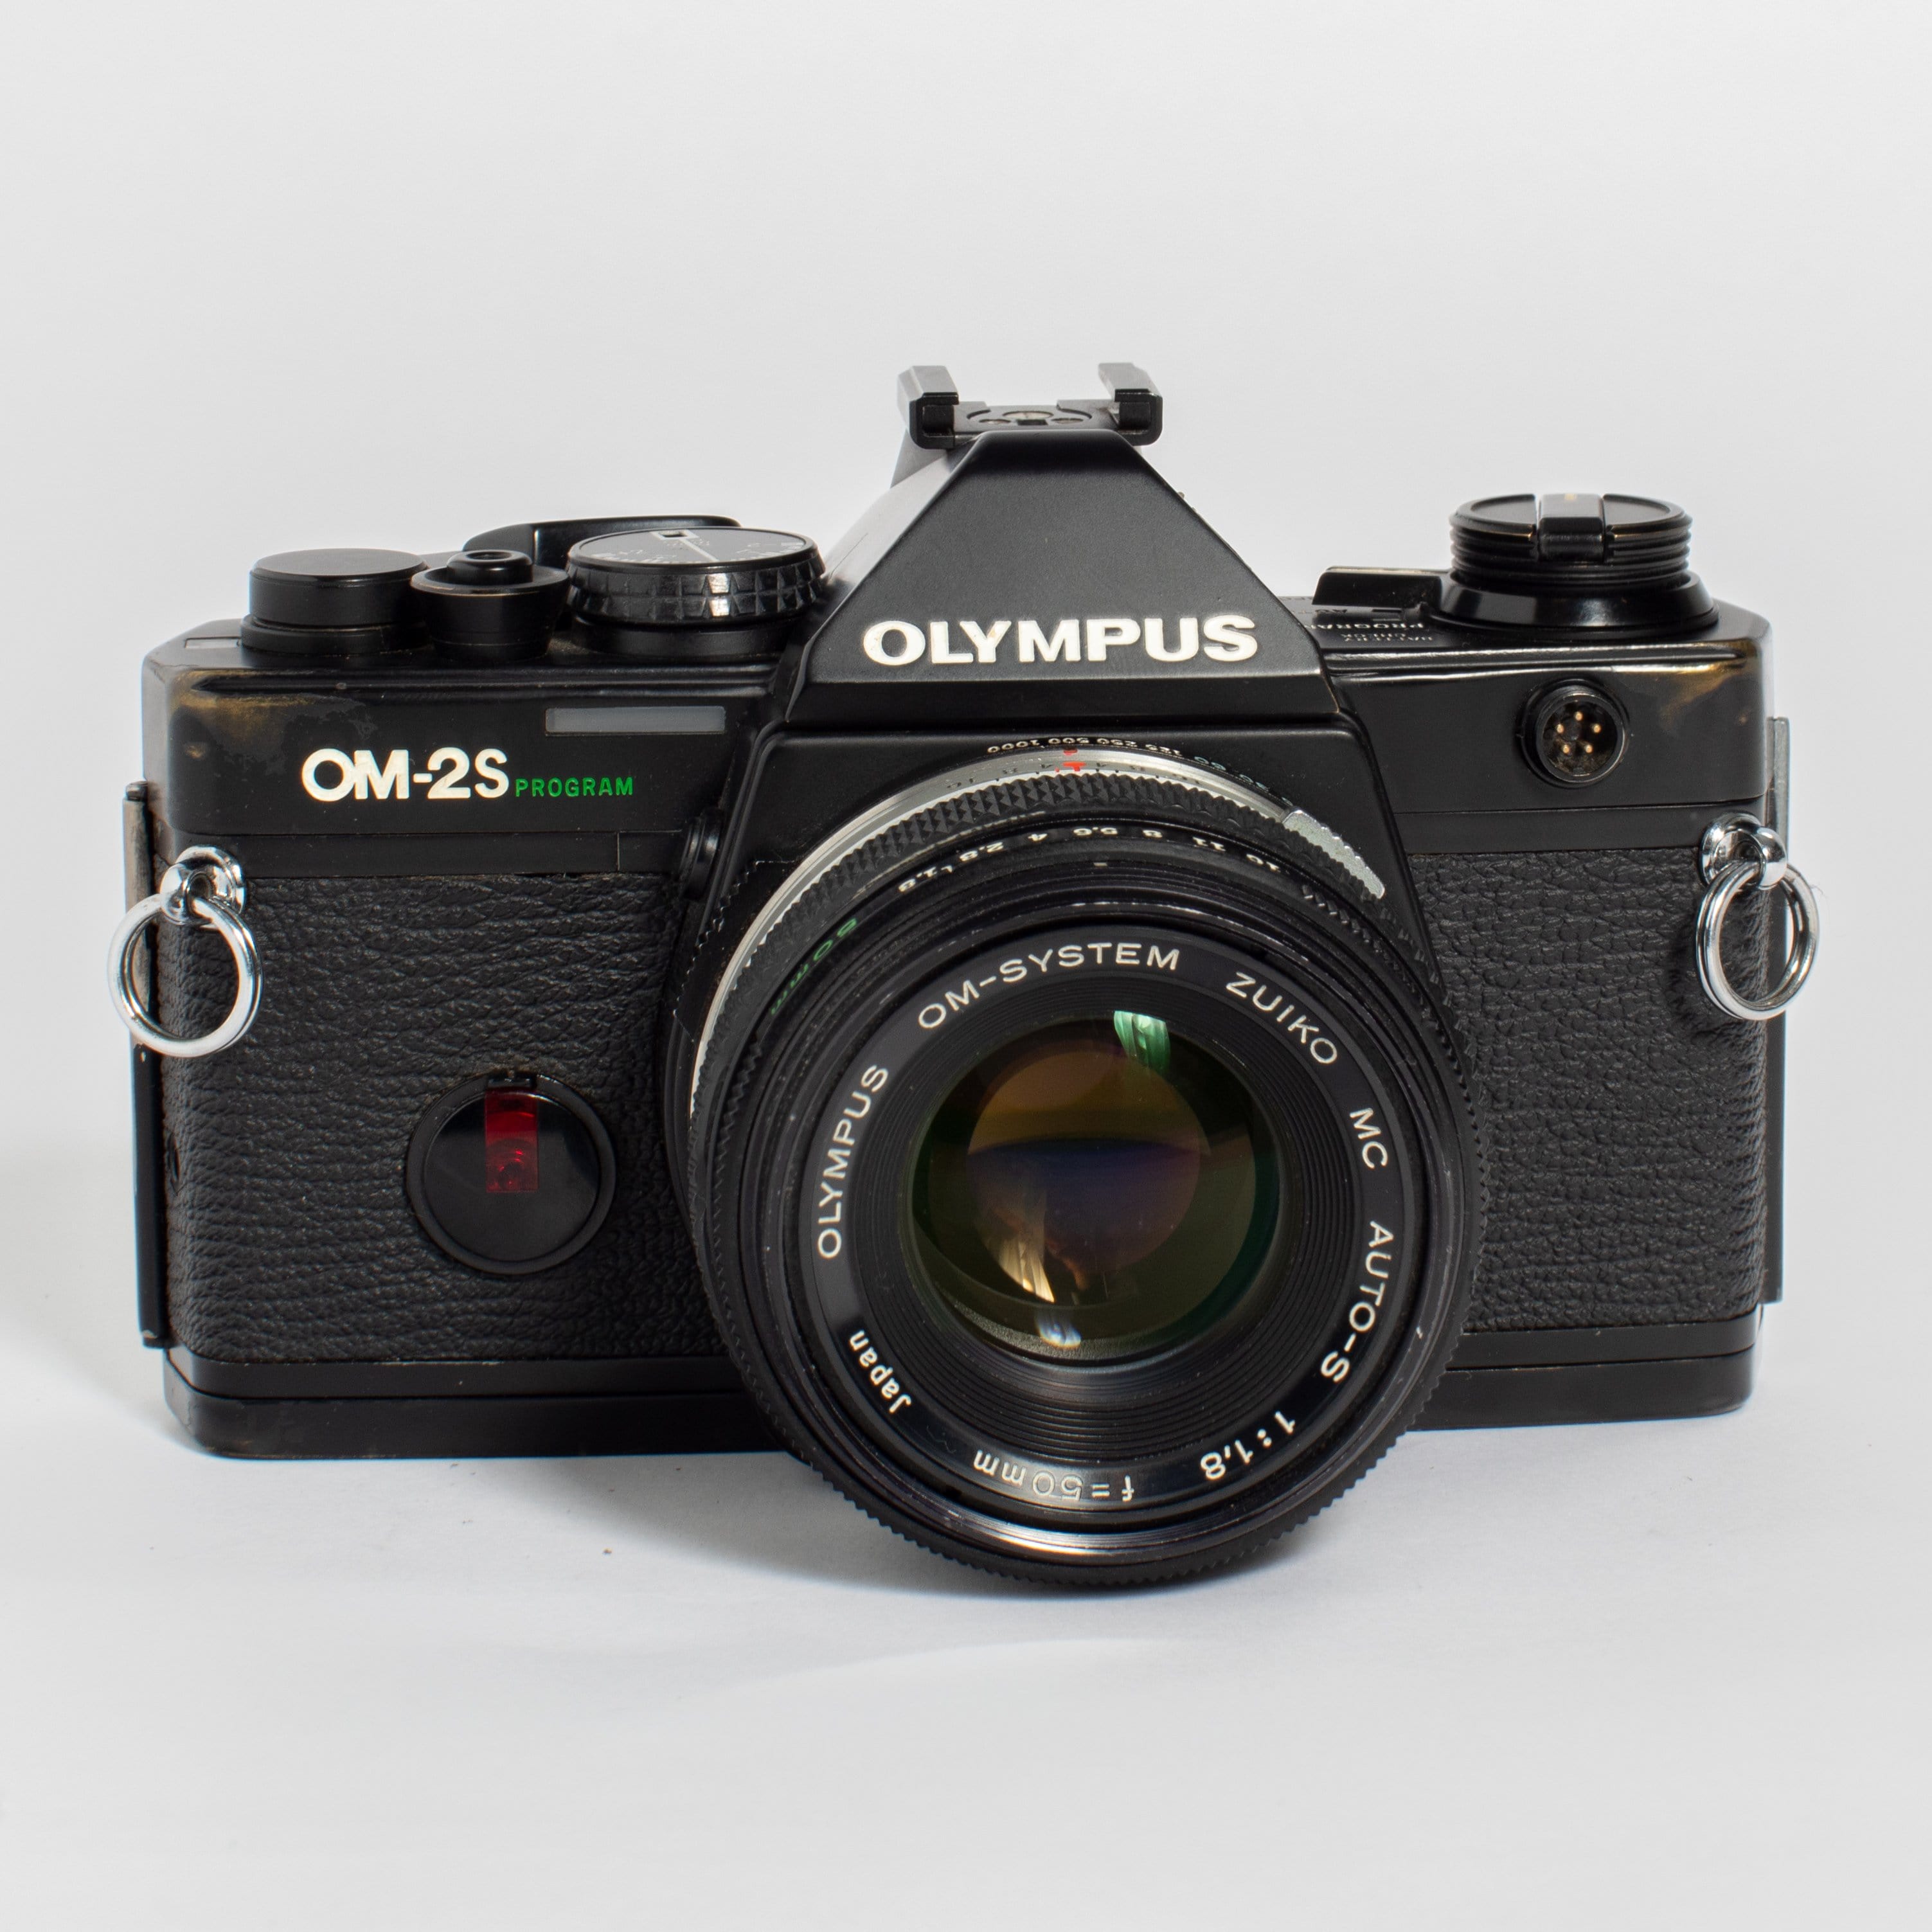 Olympus OM-2s Program with 50mm f/1.8 Lens – Film Supply Club